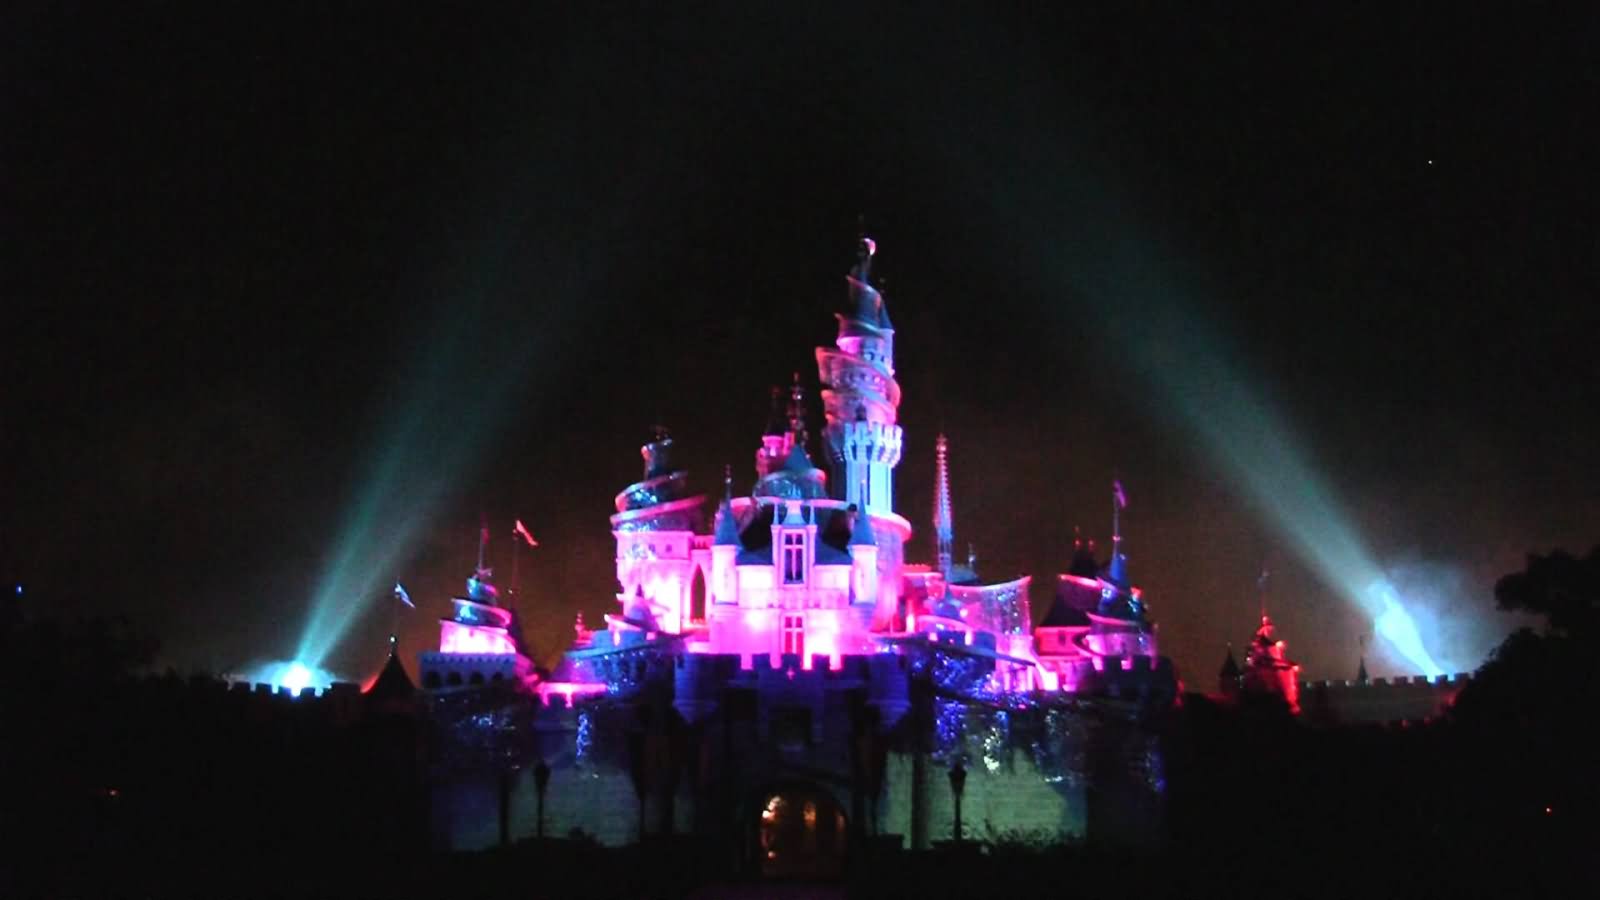 The Hong Kong Disneyland Illuminated At Night